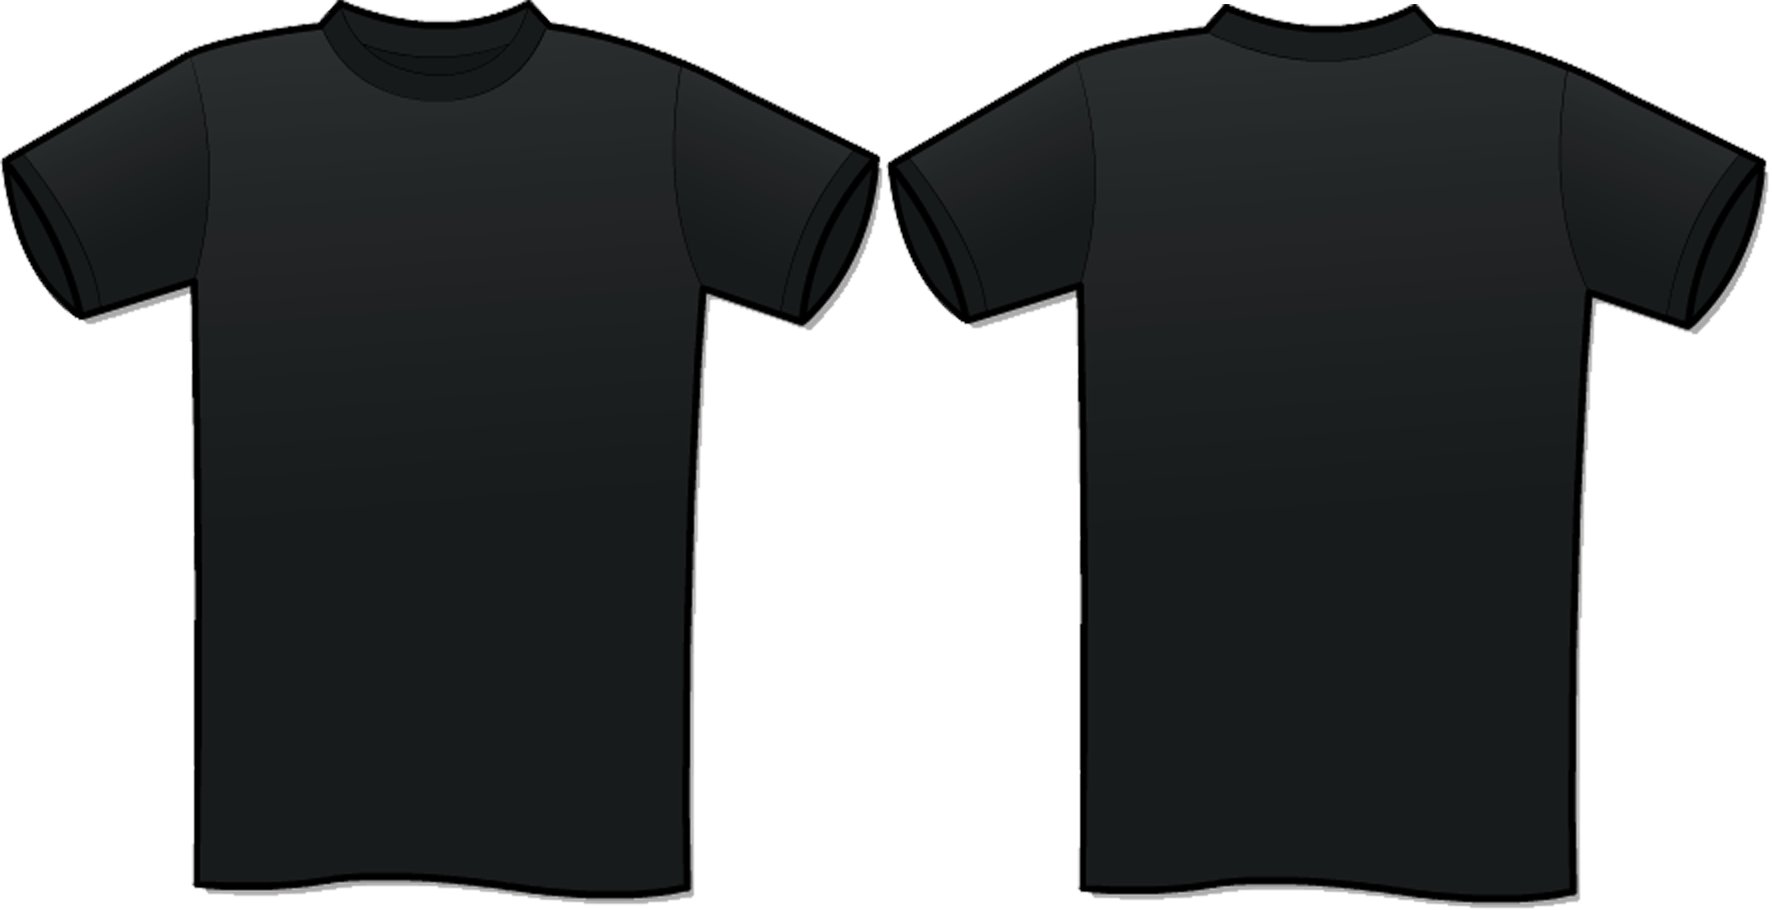 Black T-Shirt Template PSD